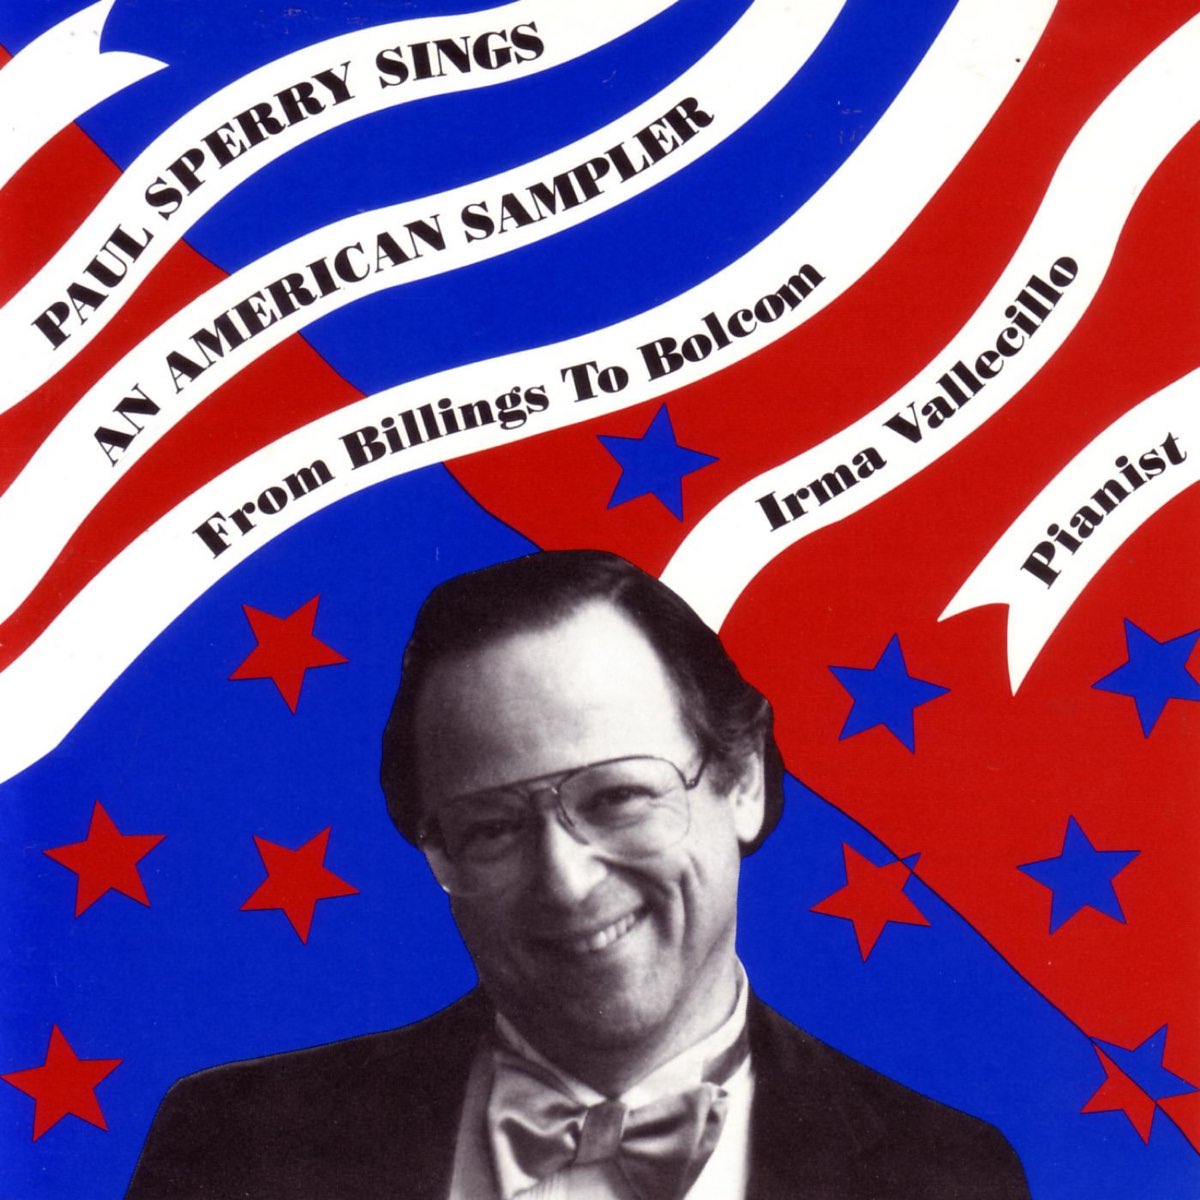 Steen Senaat Discriminatie Paul Sperry Sings: An American Sampler by Paul Sperry on Apple Music